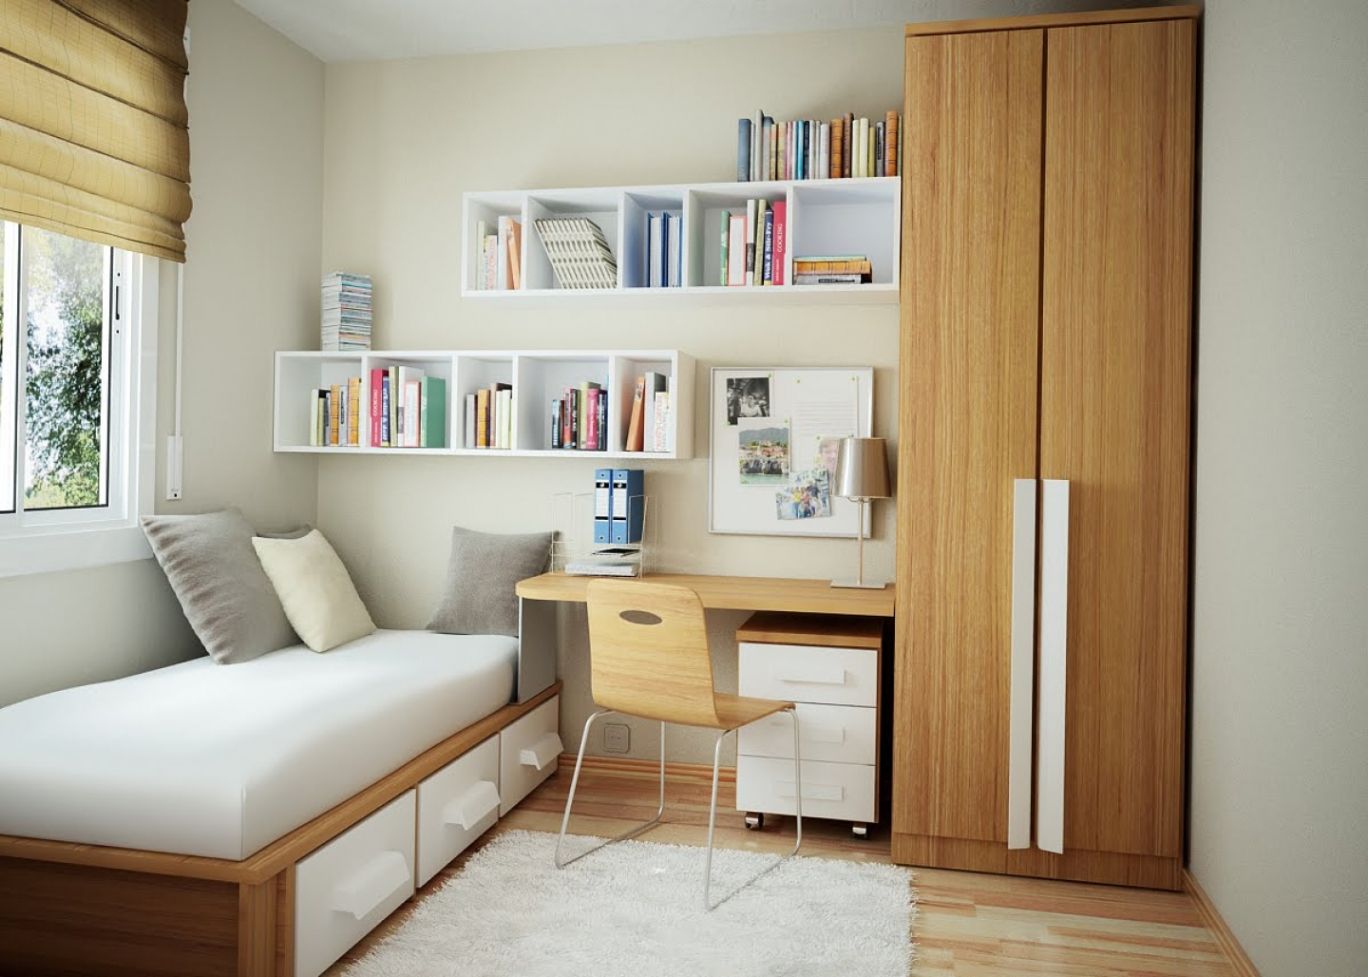 14 Smart Home Office in Bedroom Design Ideas